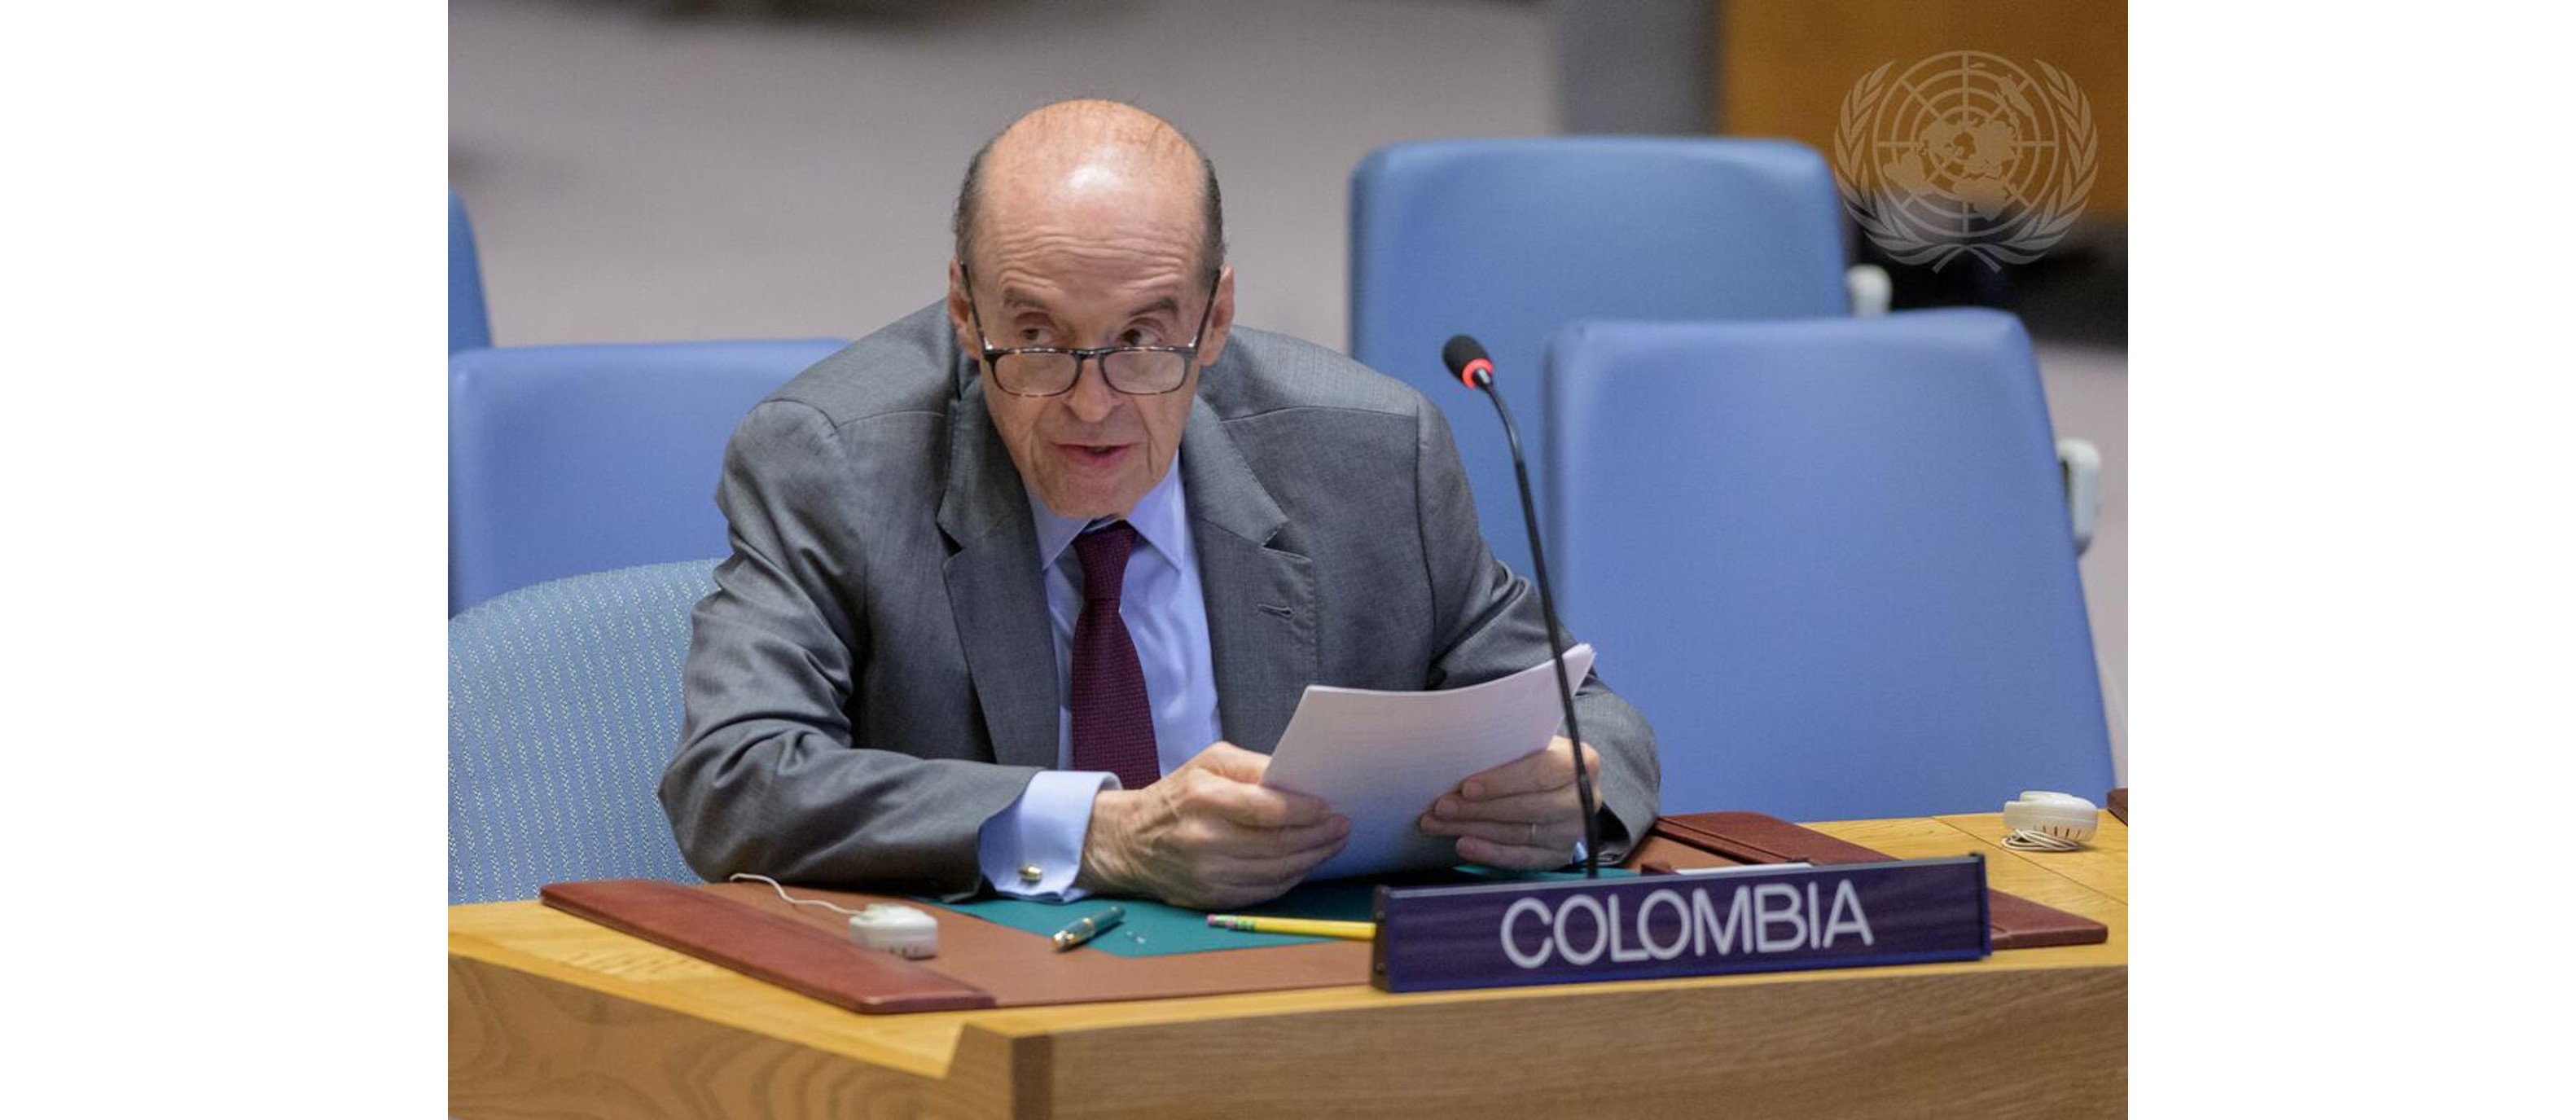 El Canciller Álvaro Leyva participará en la presentación del informe trimestral de la Misión de Verificación de la ONU en Colombia ante el Consejo de Seguridad de las Naciones Unidas